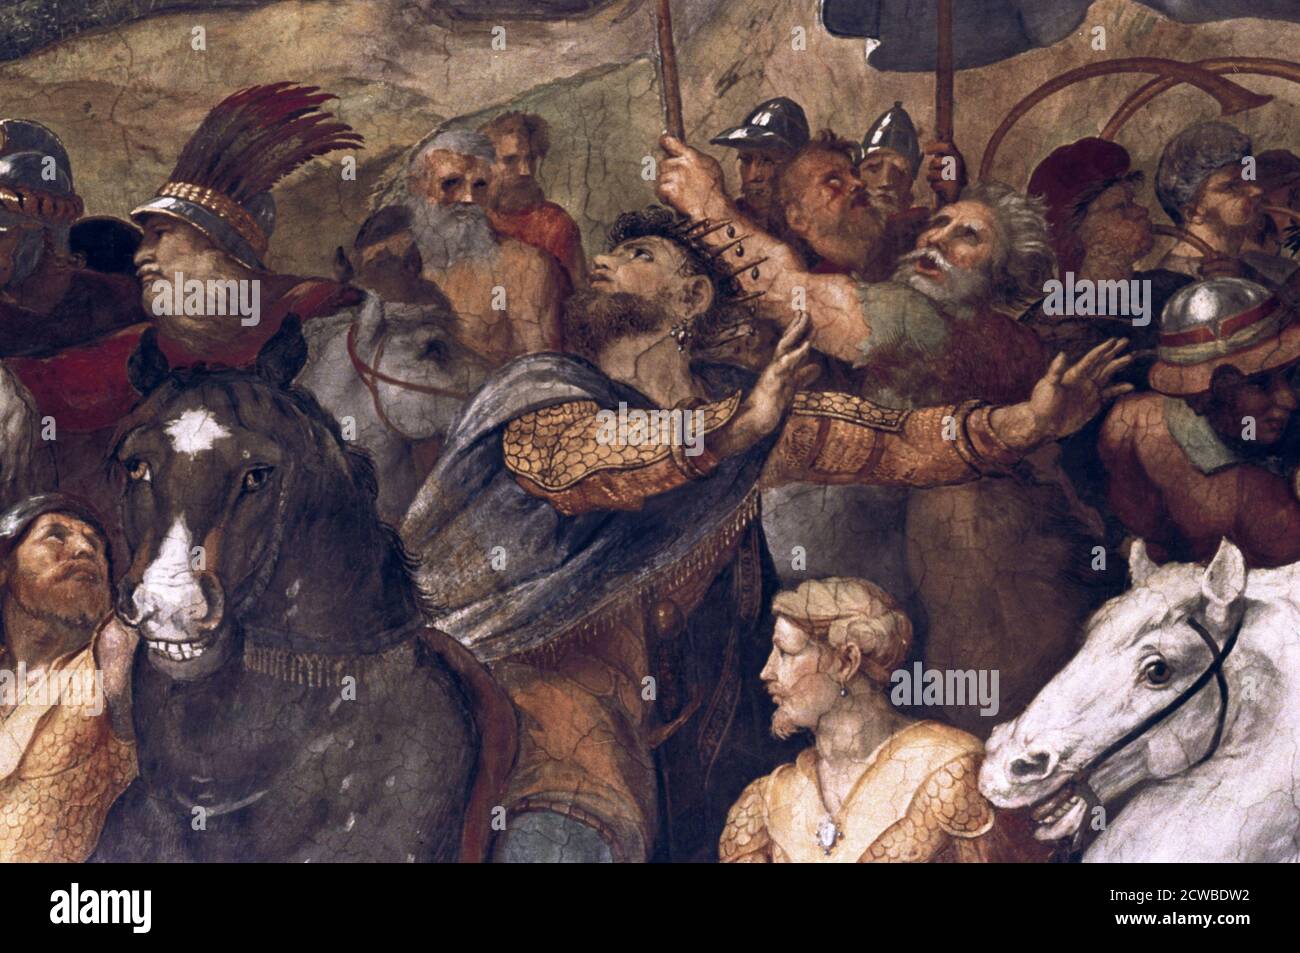 Papst Leo I., abstoßend Attila', (Detail), 1511-14. Künstler: Raphael. Raphael (1483-1520) war ein italienischer Maler und Architekt der Hochrenaissance. Seine Arbeit wird für seine Klarheit der Form, Leichtigkeit der Komposition und visuelle Leistung der menschlichen Größe bewundert. Stockfoto